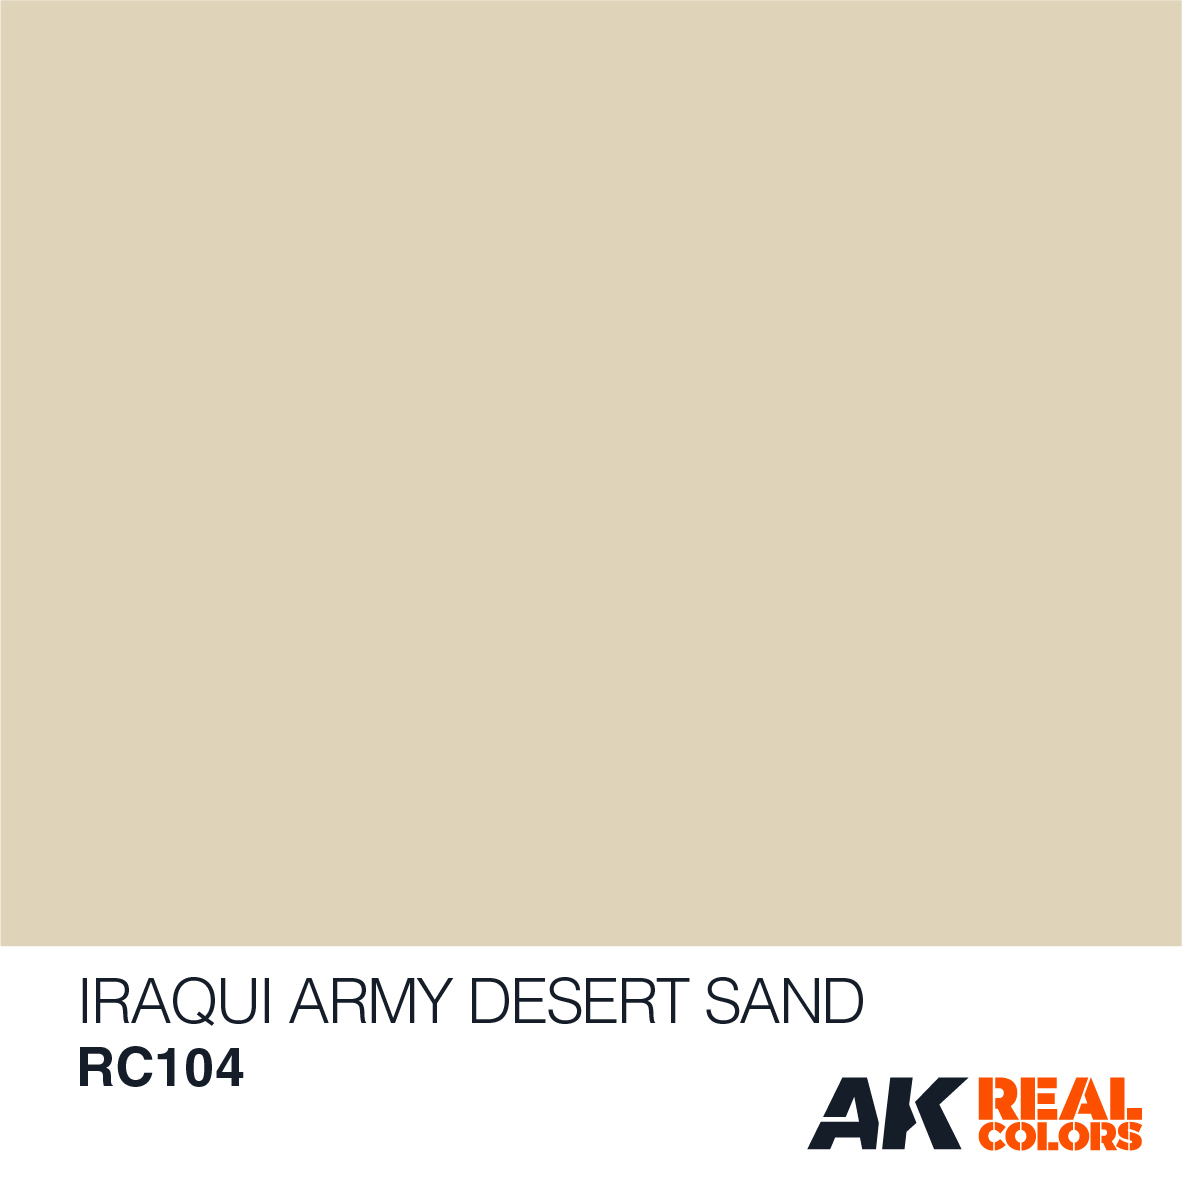 Iraqi Army Desert Sand